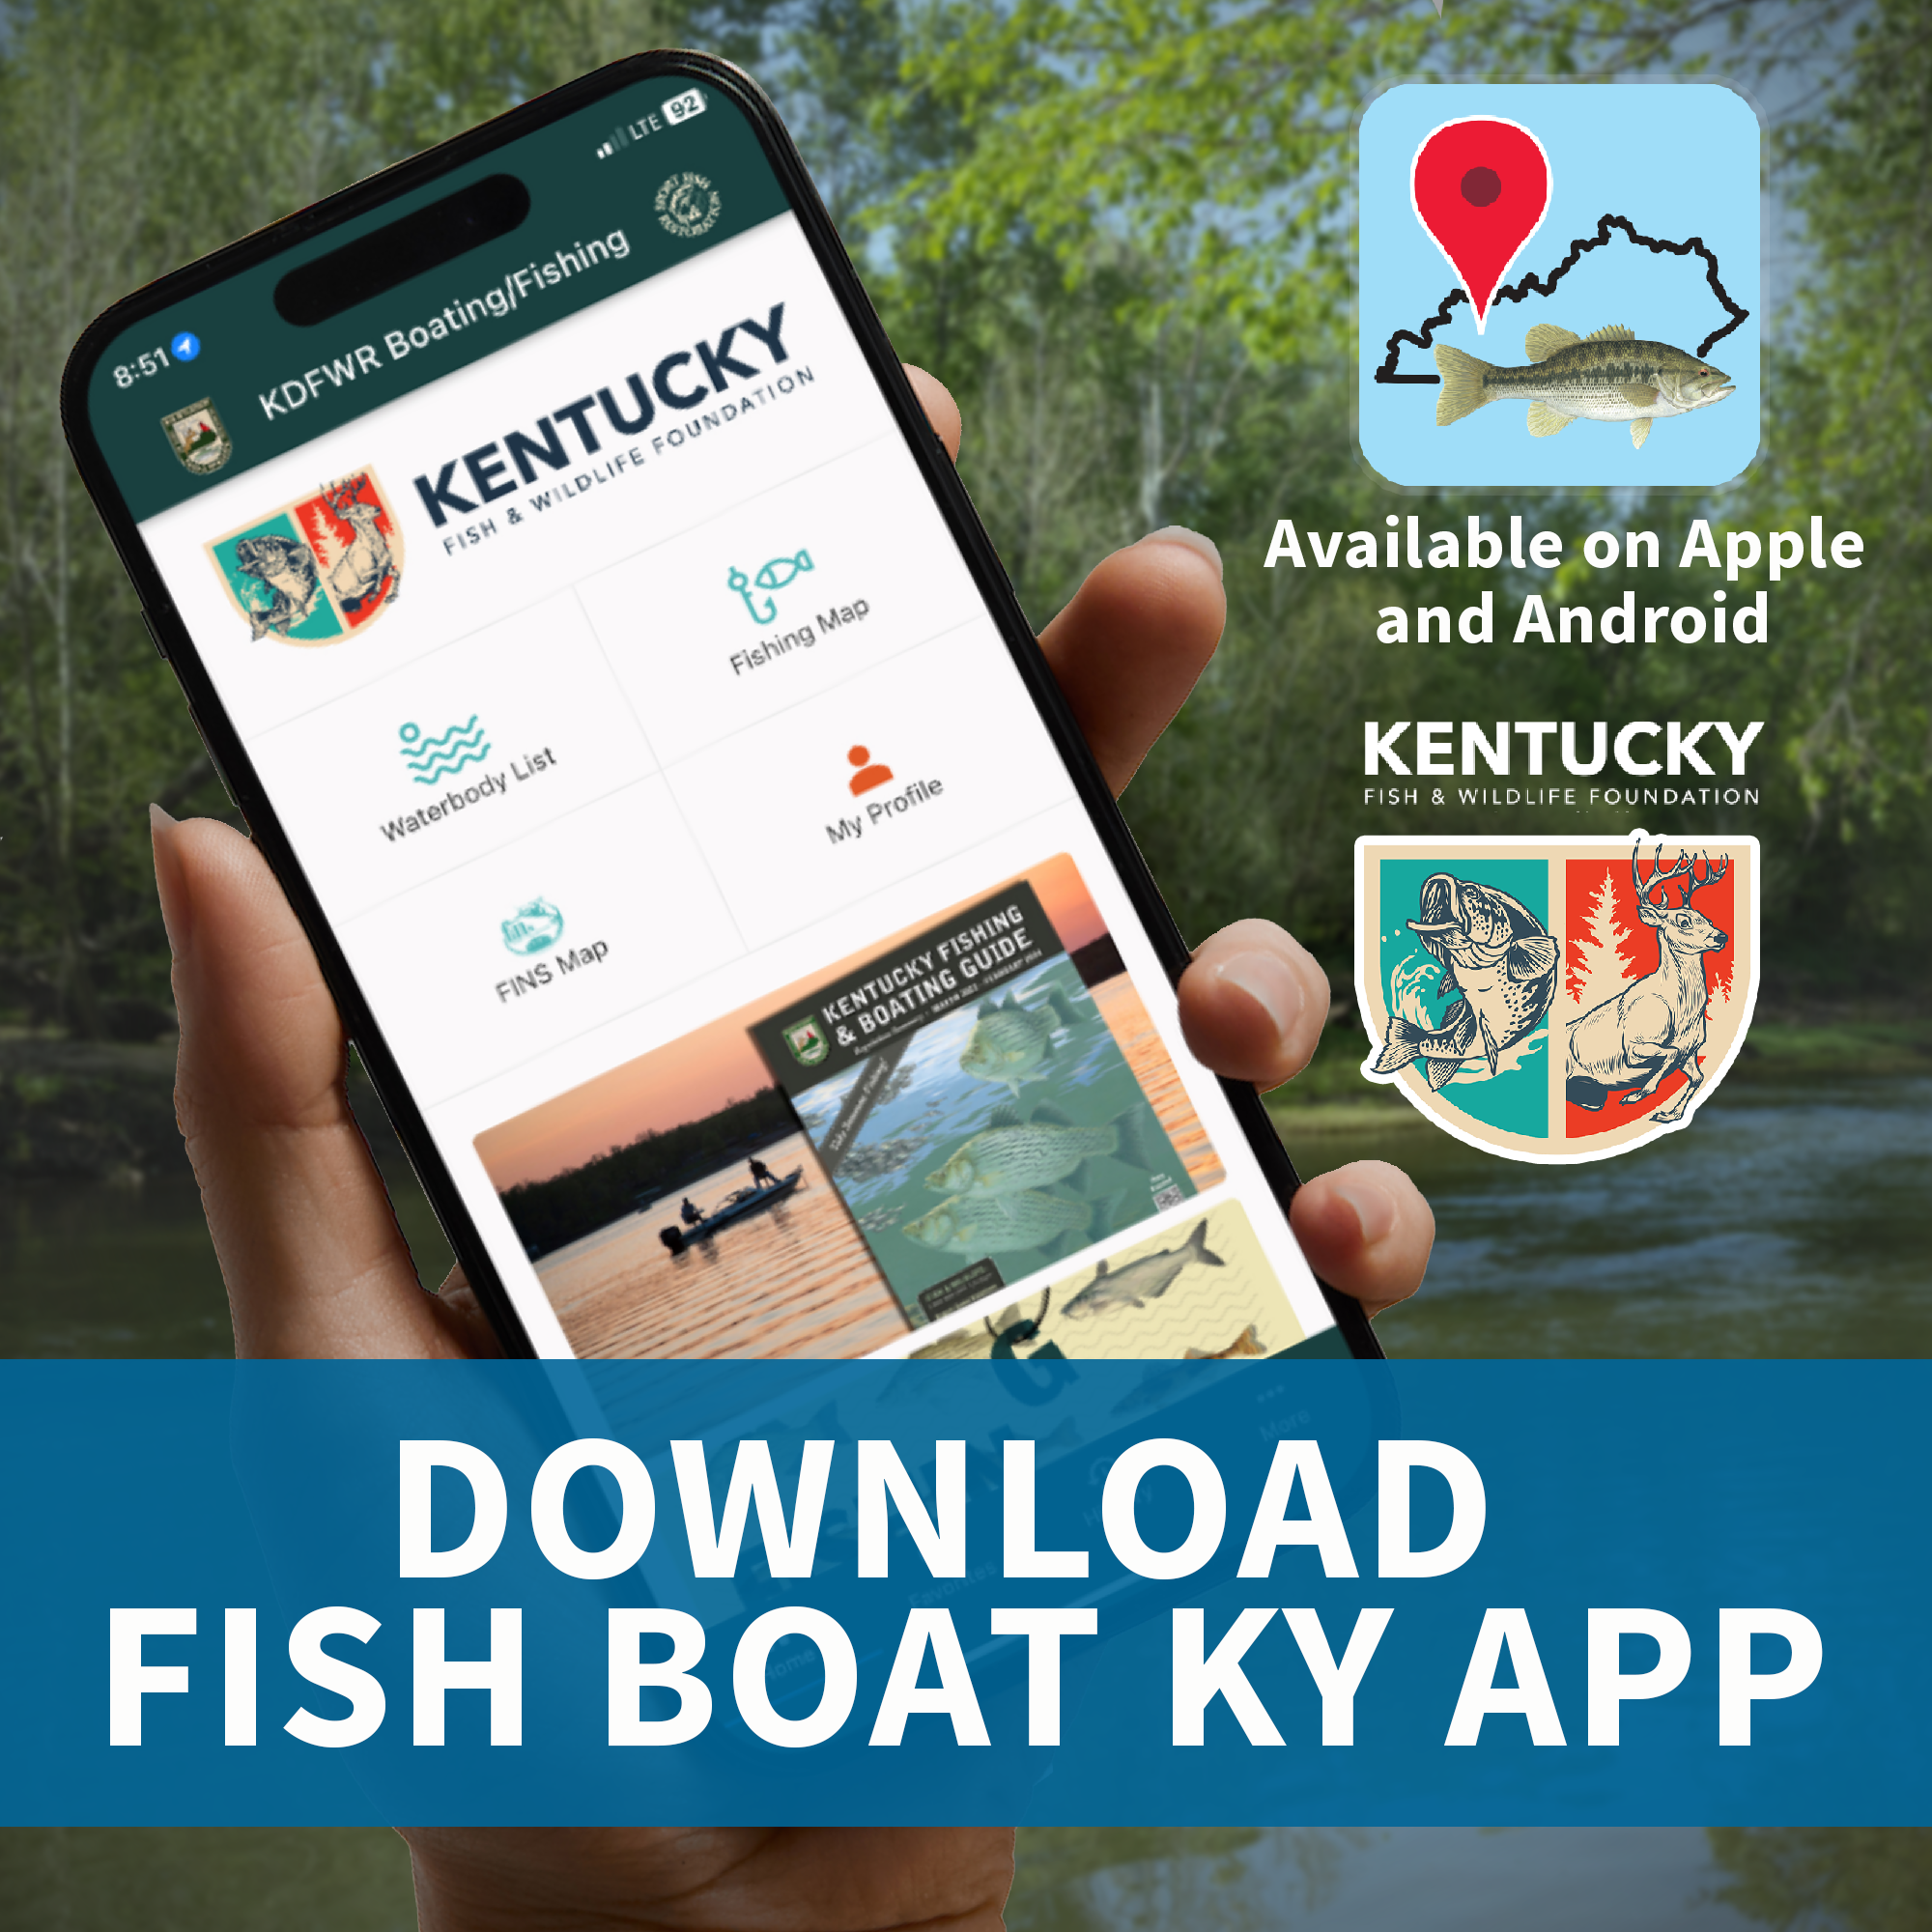 Download Boat Fish App